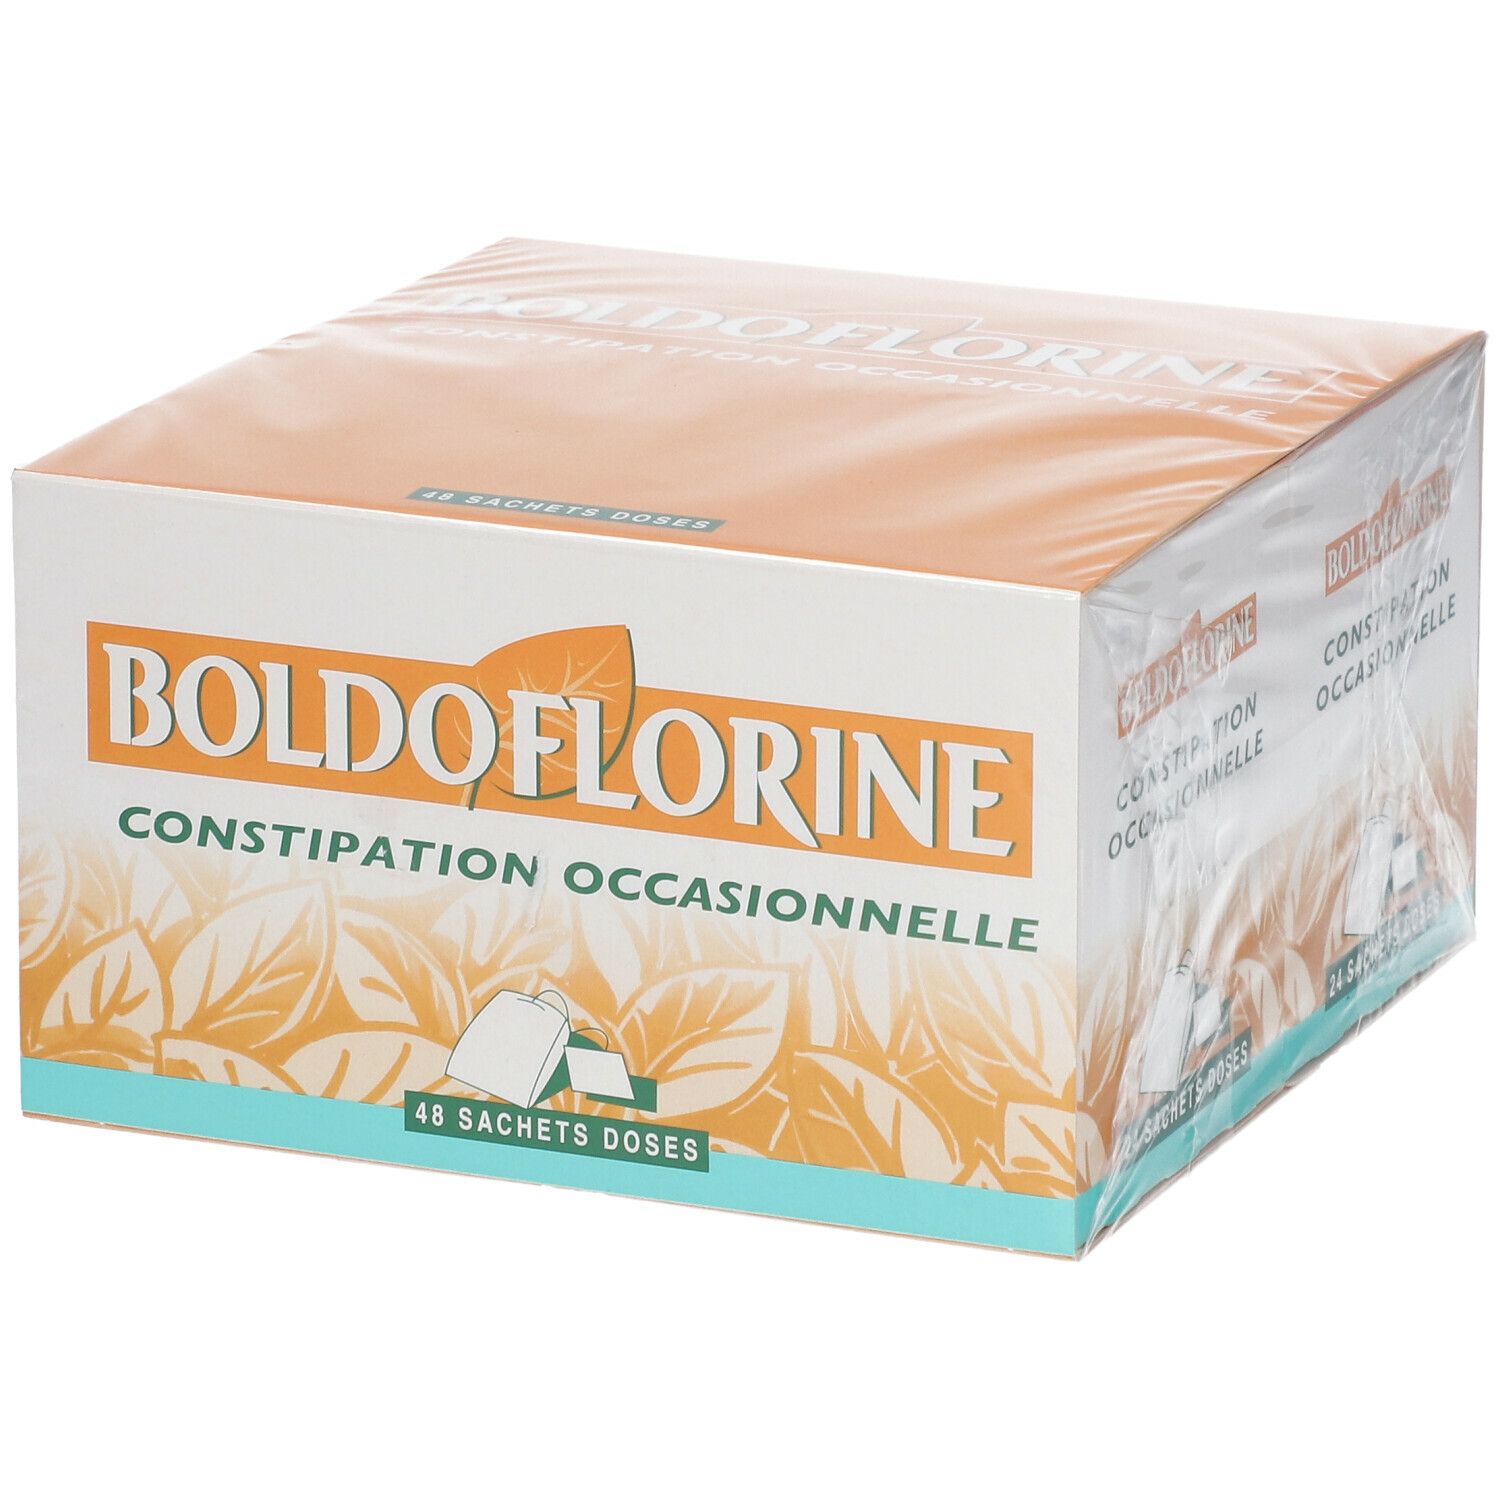 Boldoflorine, Tisane pour la Constipation, Boite de 48 Sachets 